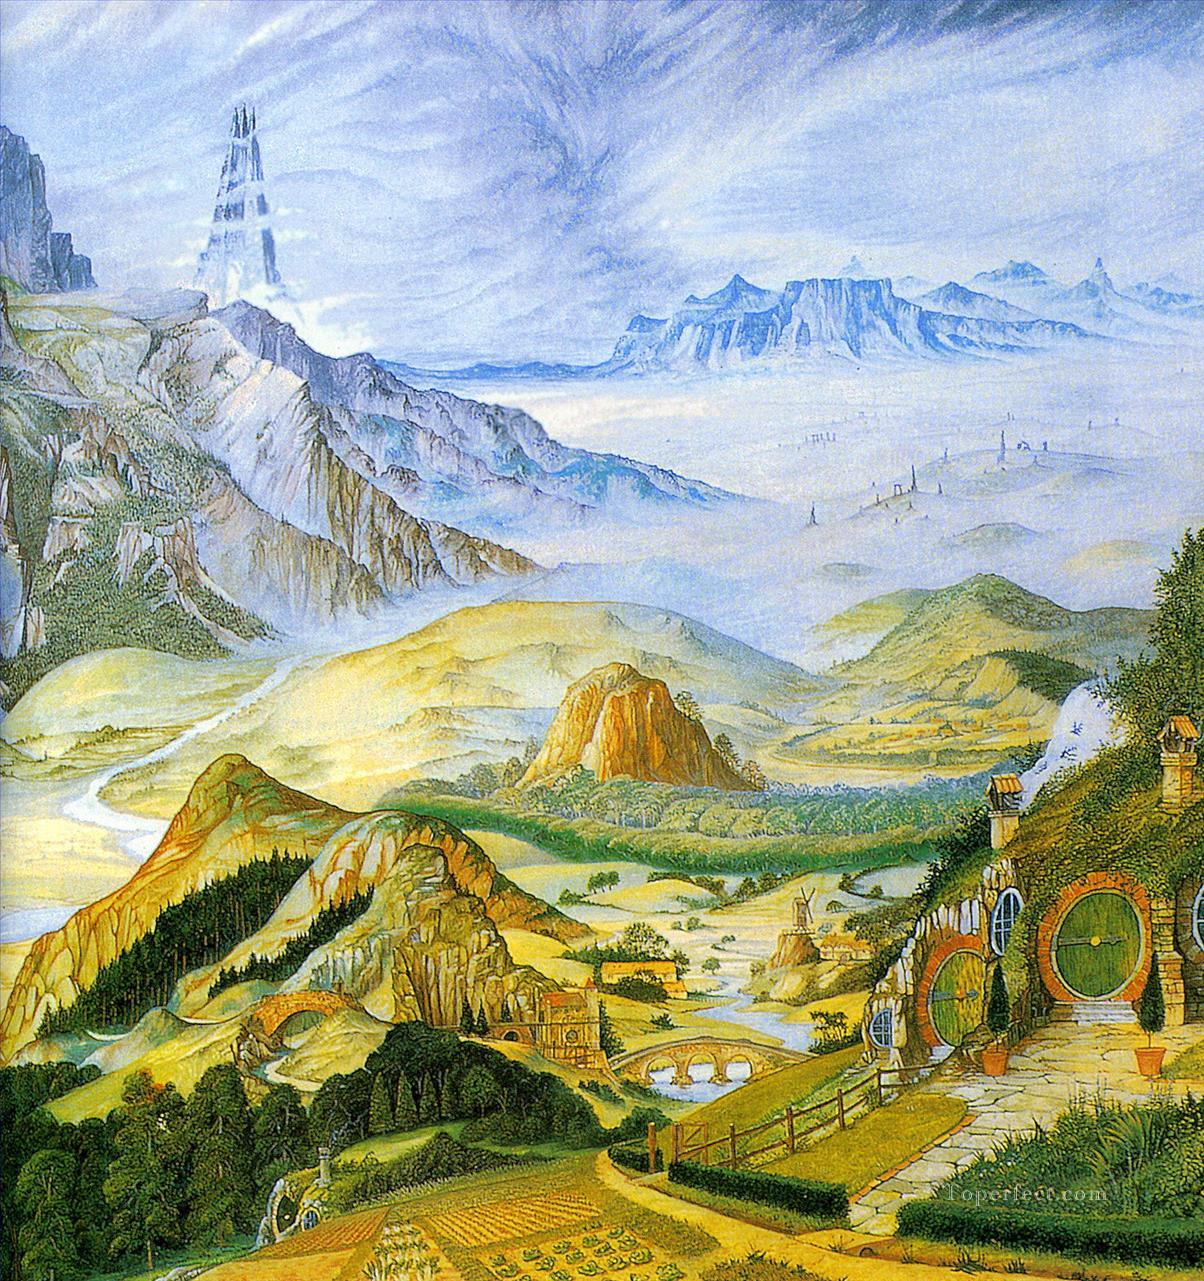 Girlanden Fantasie Mittelerde Tolkiens Landschaft 2 Ölgemälde